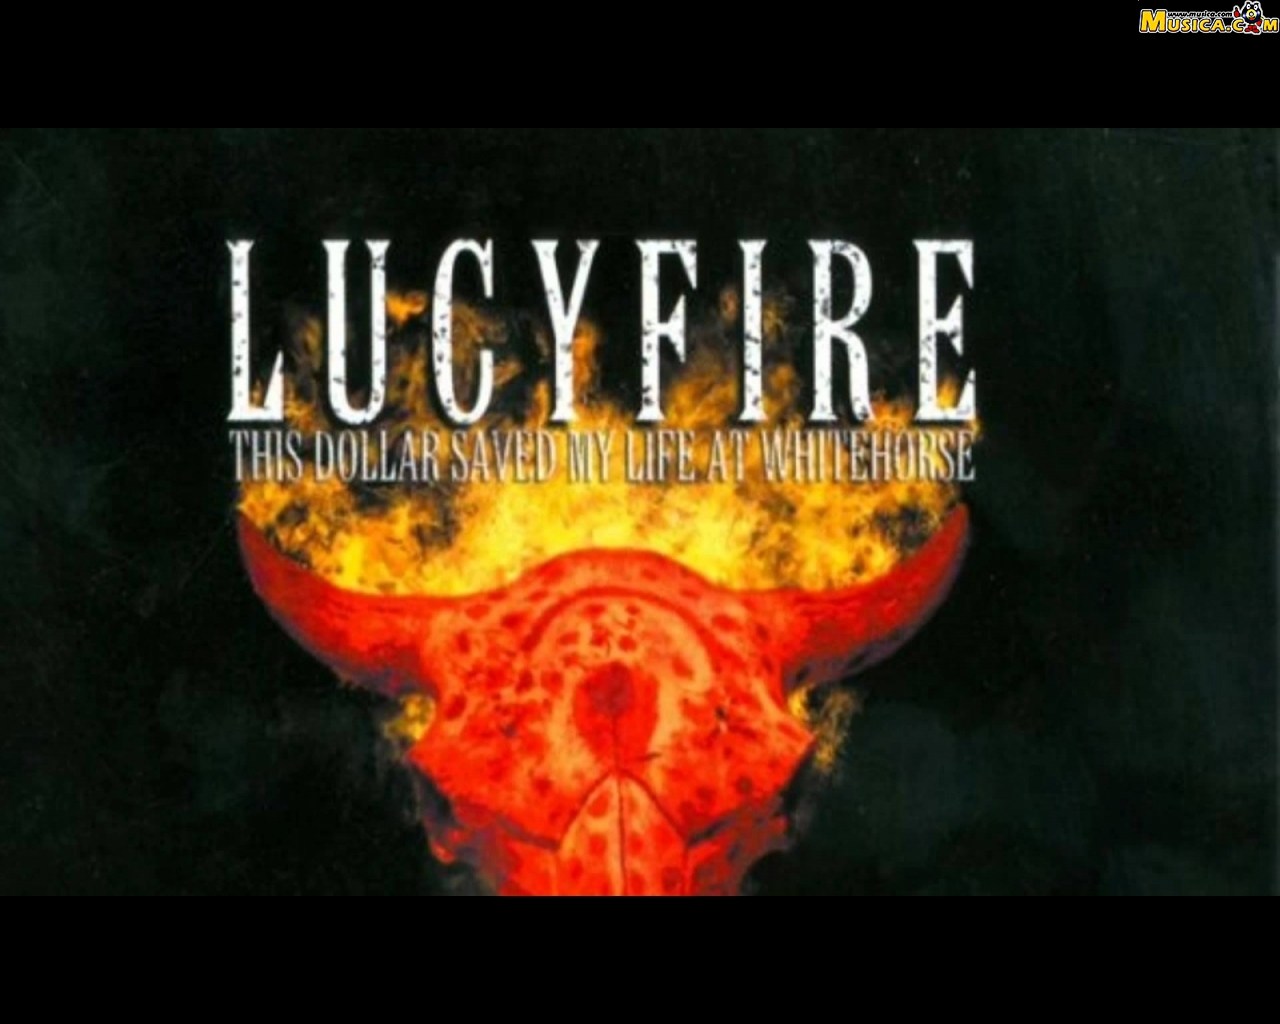 Fondo de pantalla de Lucyfire